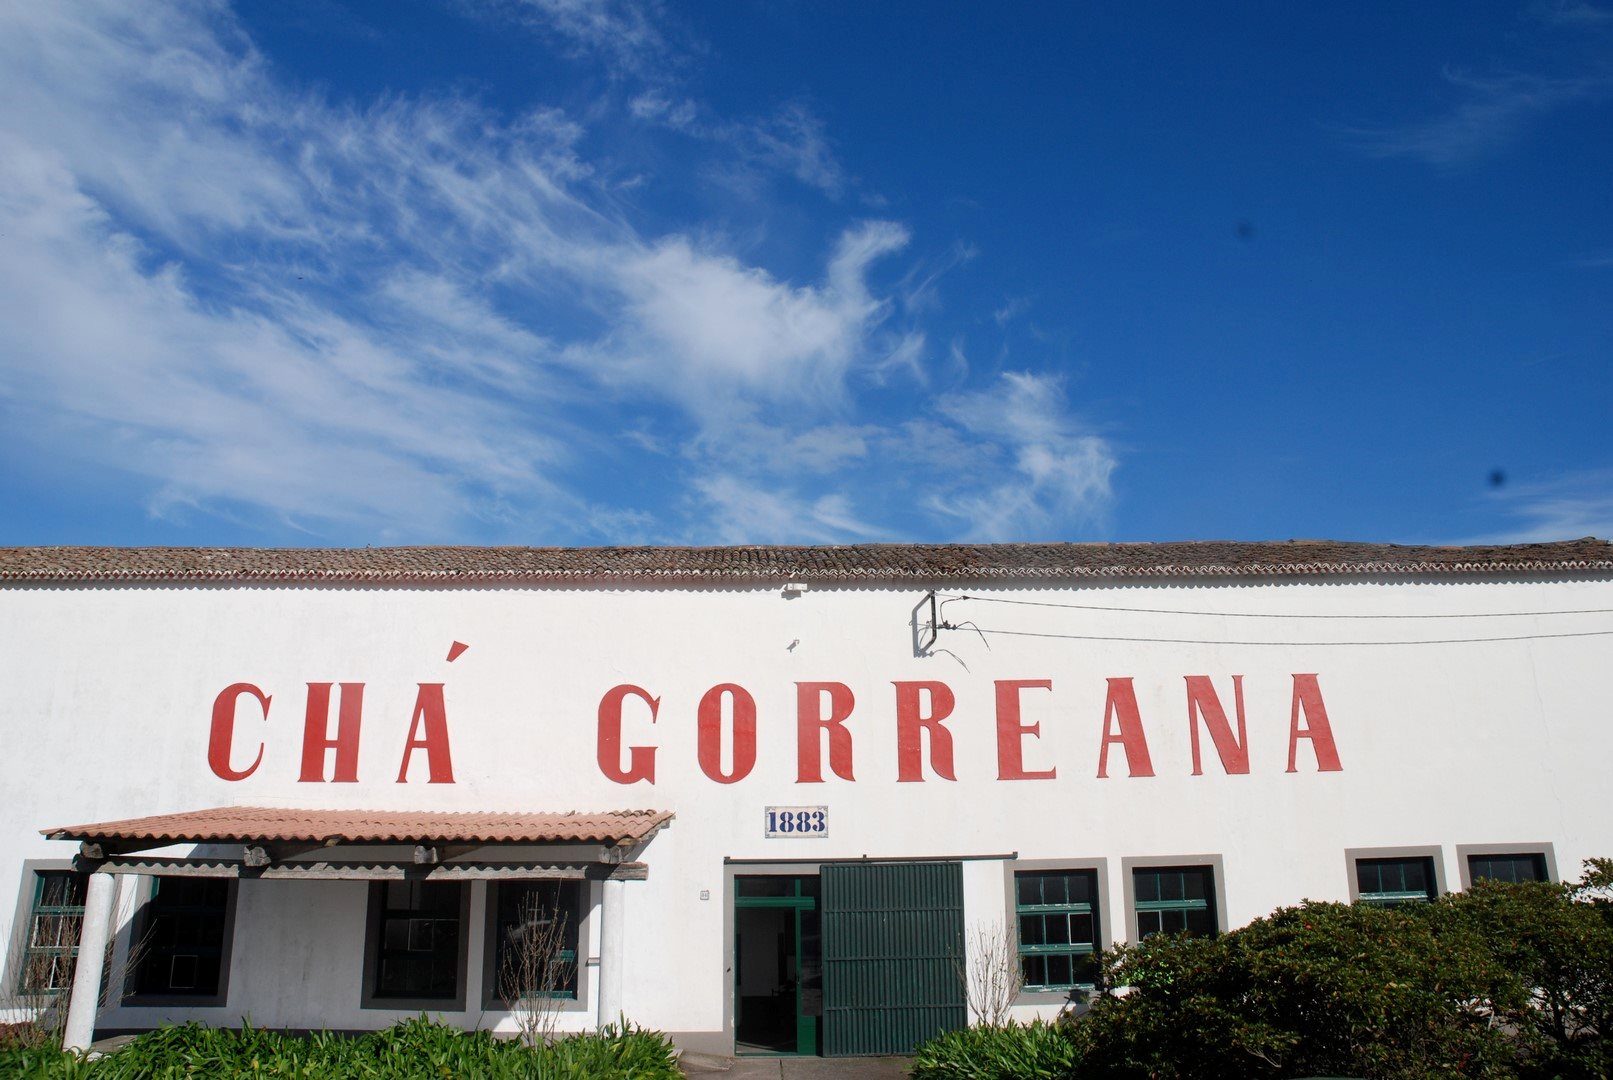 Gorreana Tea Factory - Bike Tour - São Miguel Island